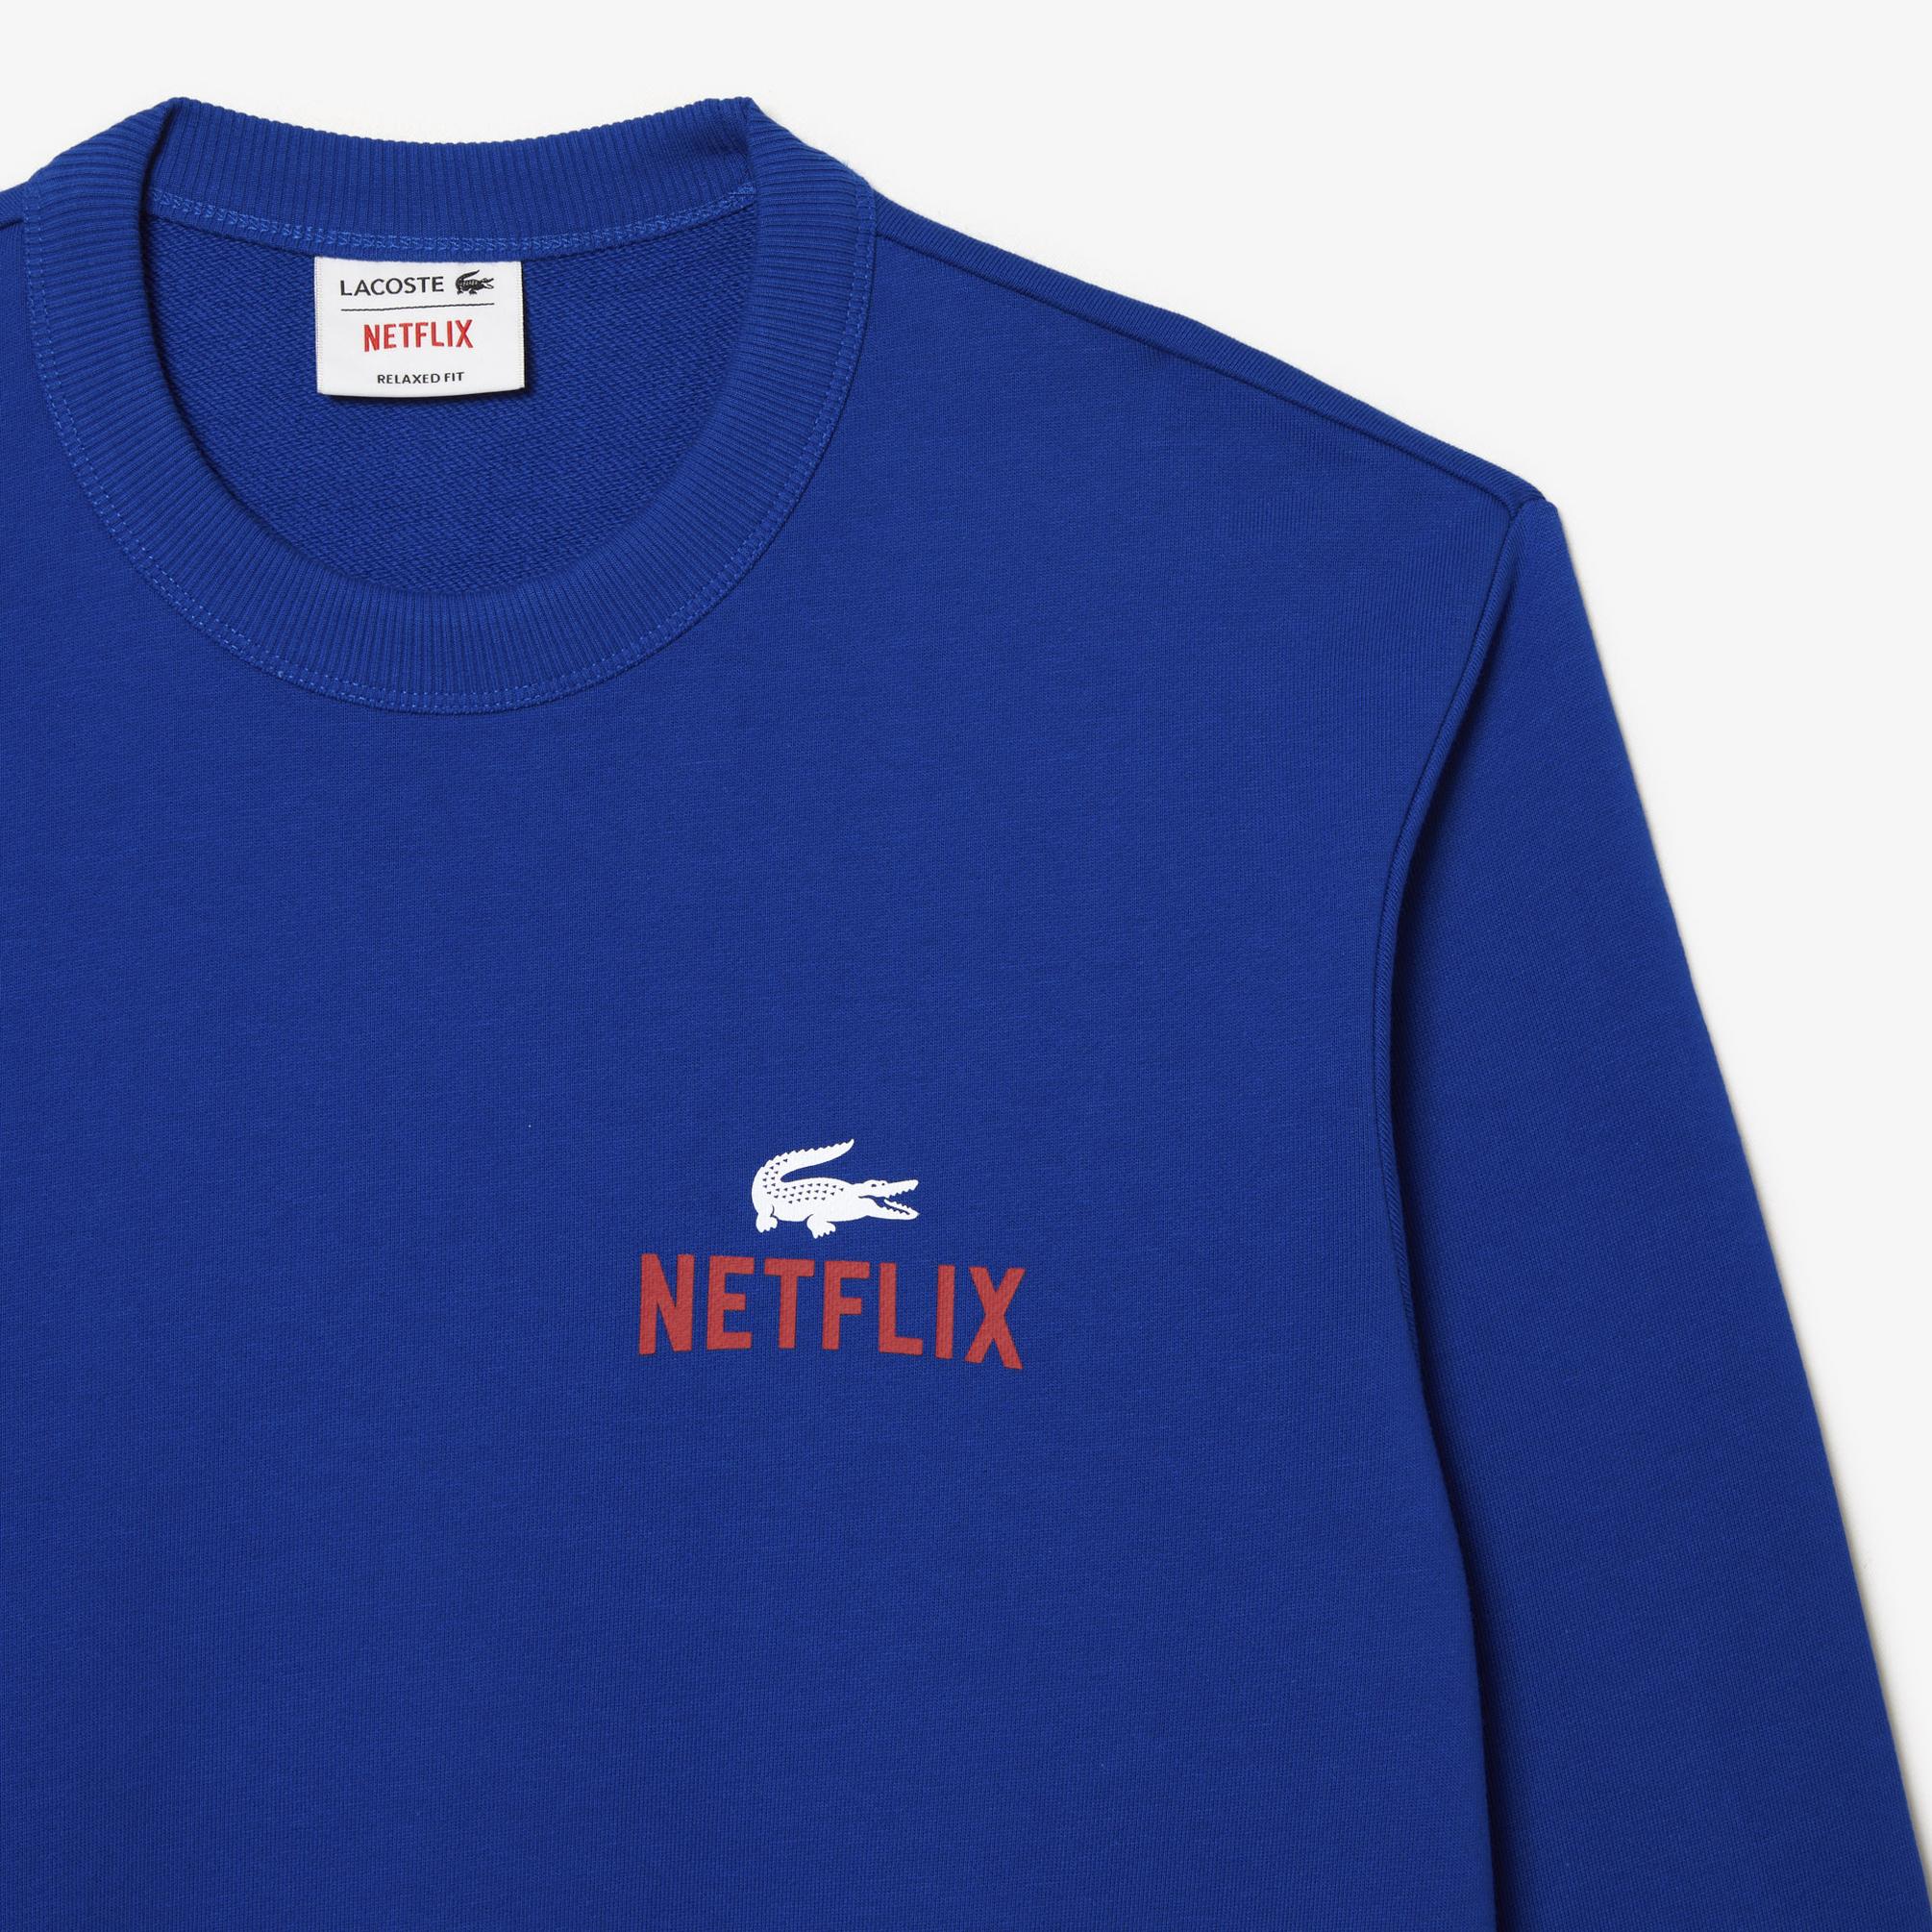  Lacoste Netflix Unisex Mavi Sweatshirt